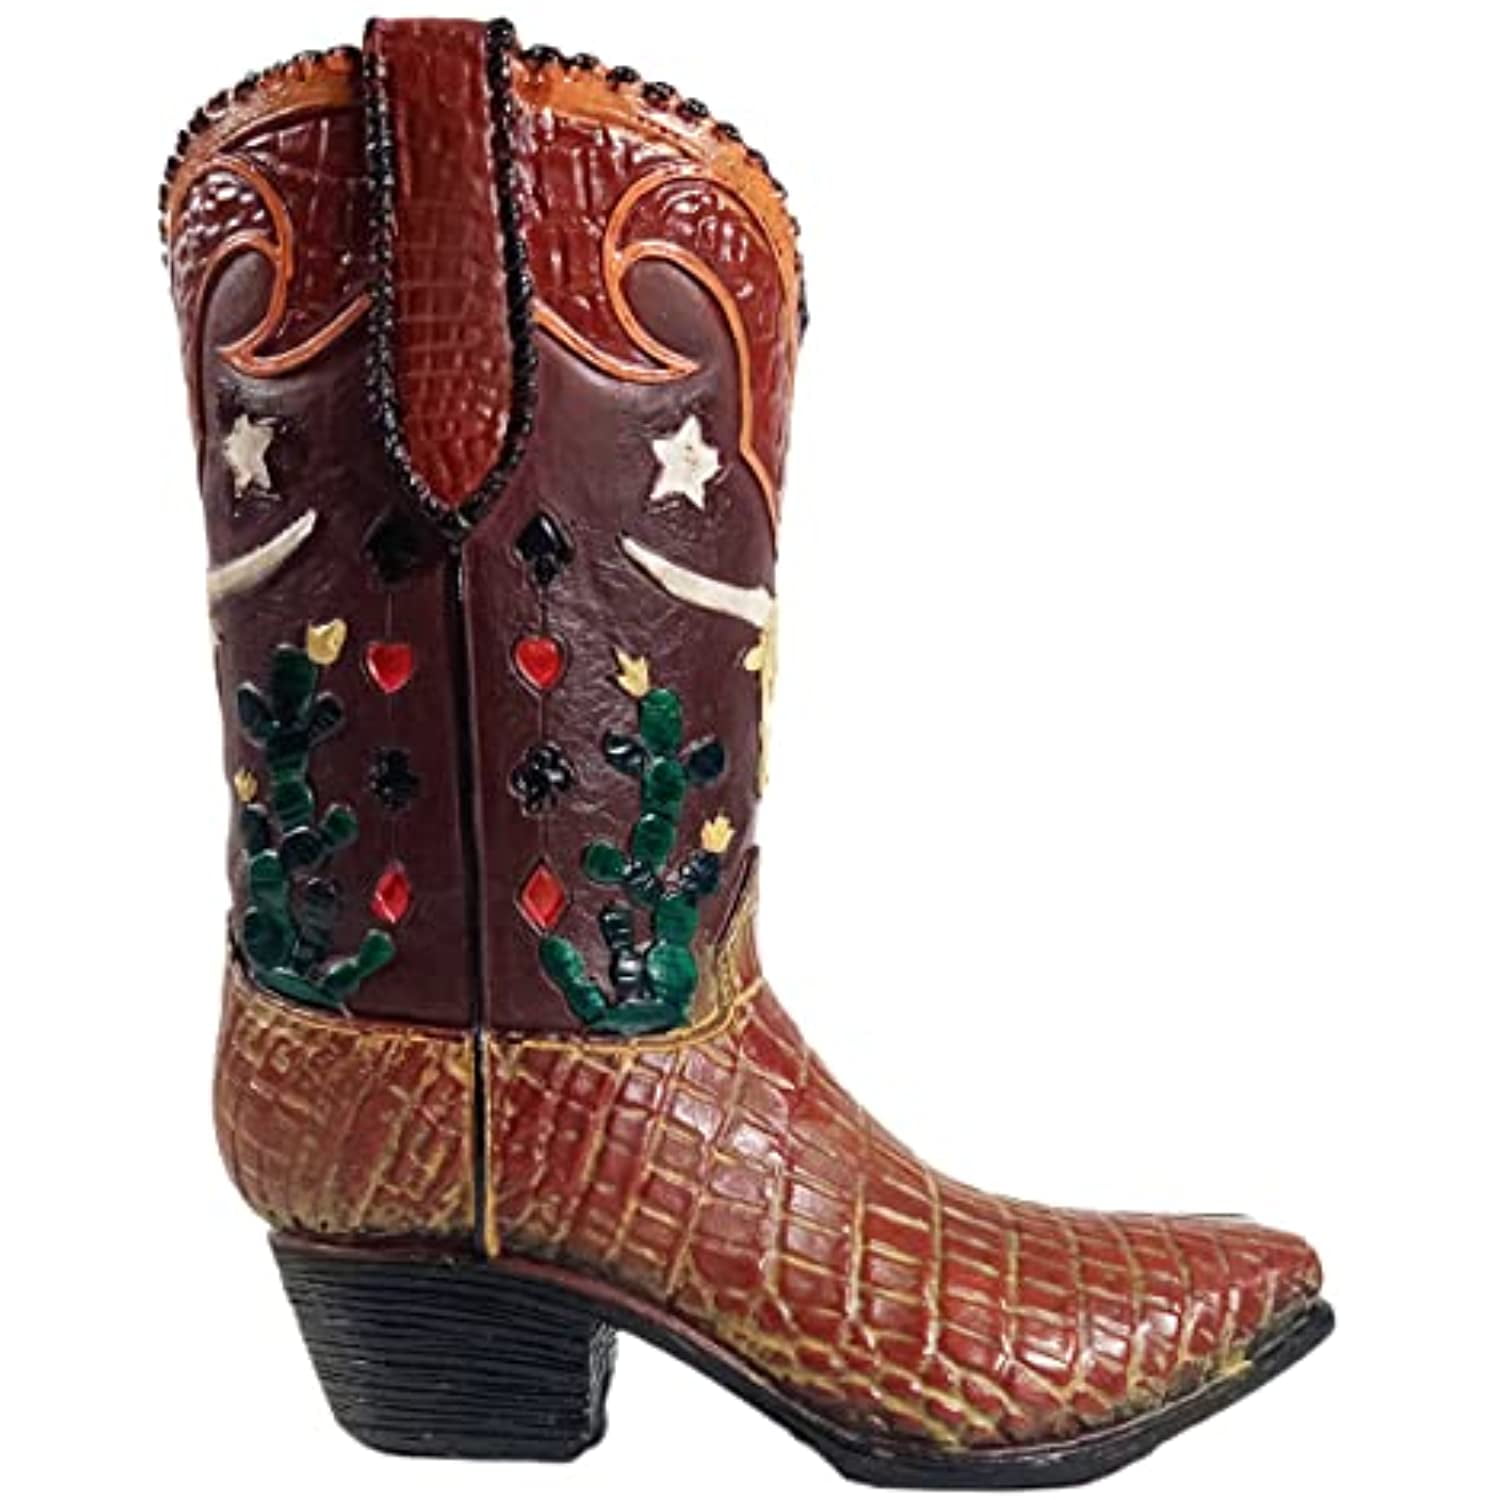 Western Cowboy Boot Flower Vase Rustic Country Utensil Holder Longhorn Cowboy 